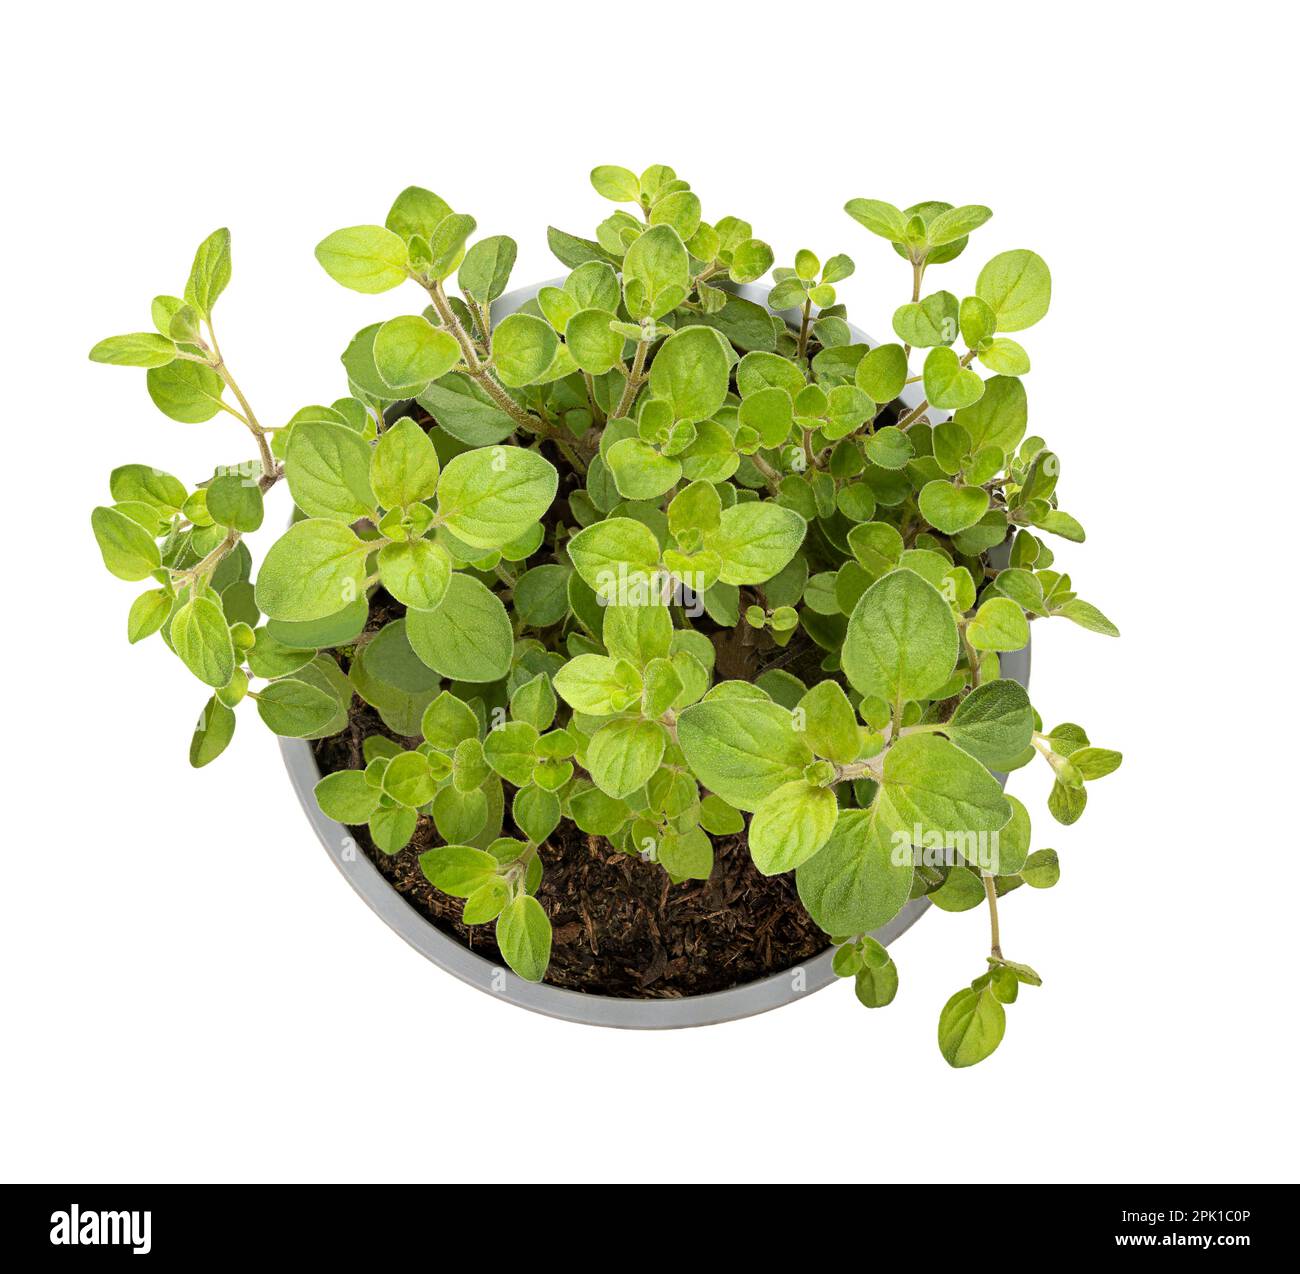 Origano, pianta giovane in una pentola di plastica grigia. Origanum vulgare, un'erba culinaria e l'erba di base della cucina italiana, usata per il sapore delle sue foglie. Foto Stock